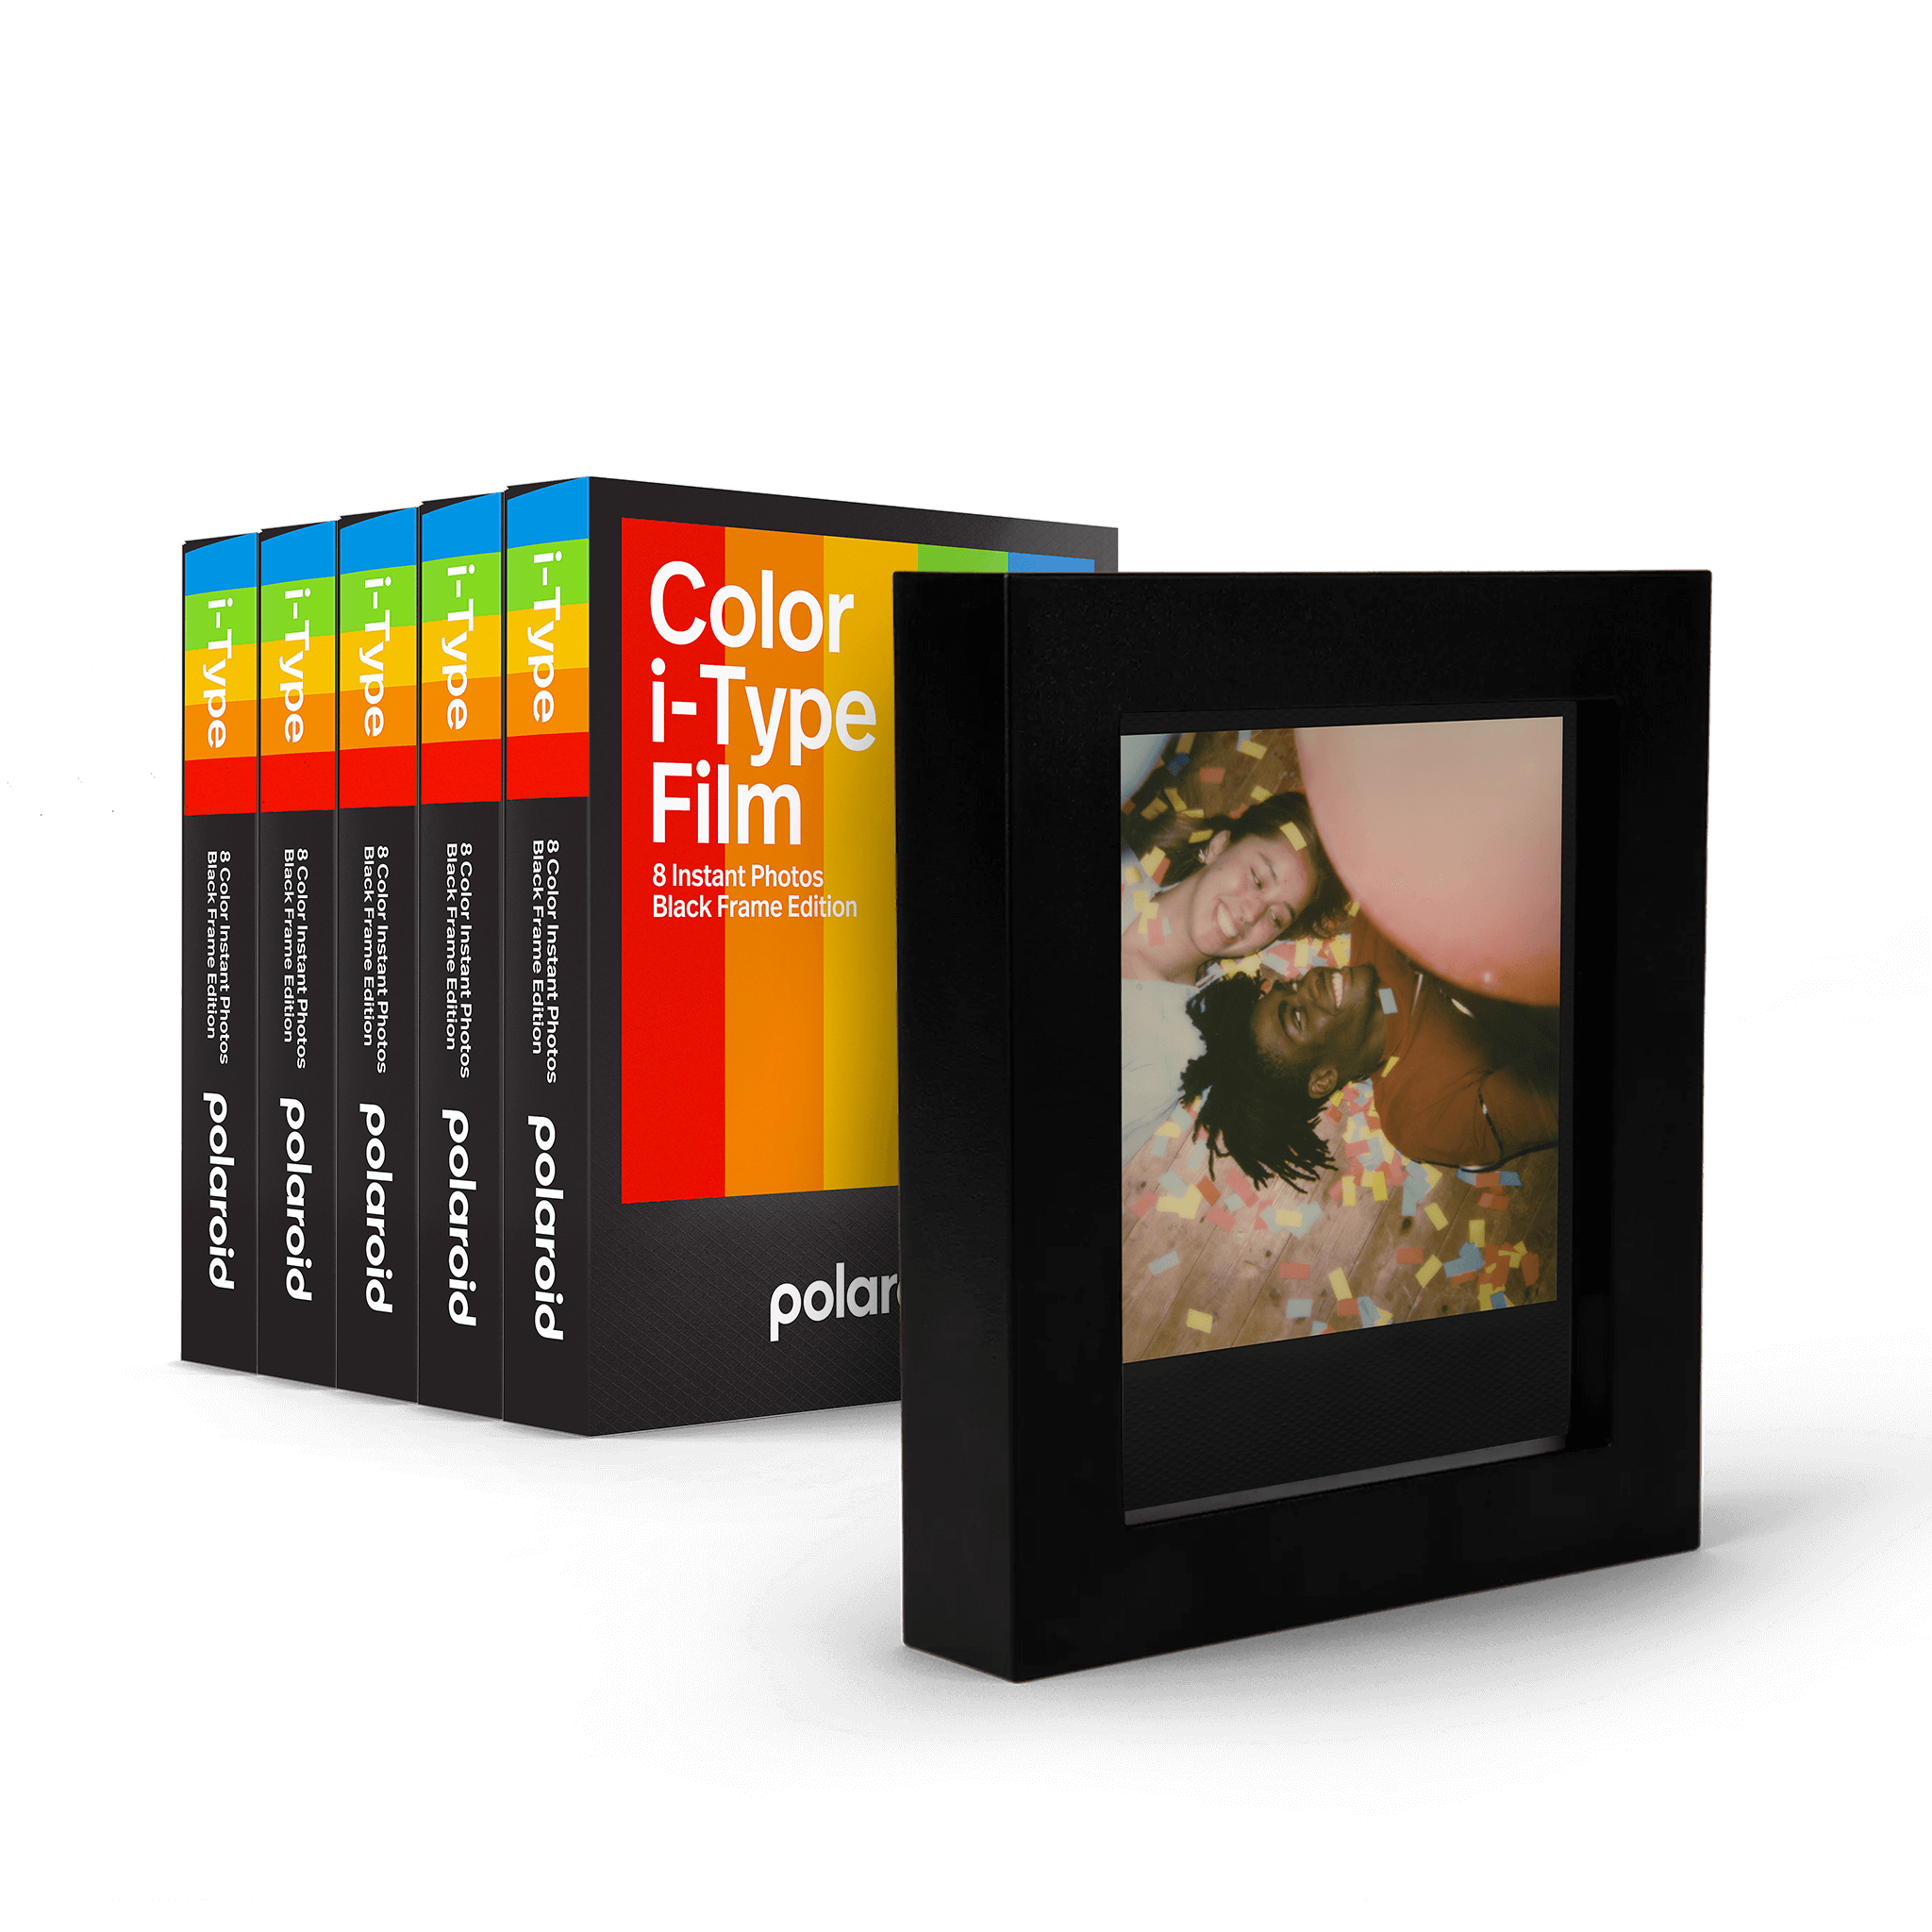 Film Polaroid i-Type  Couleur – Studio Argentique